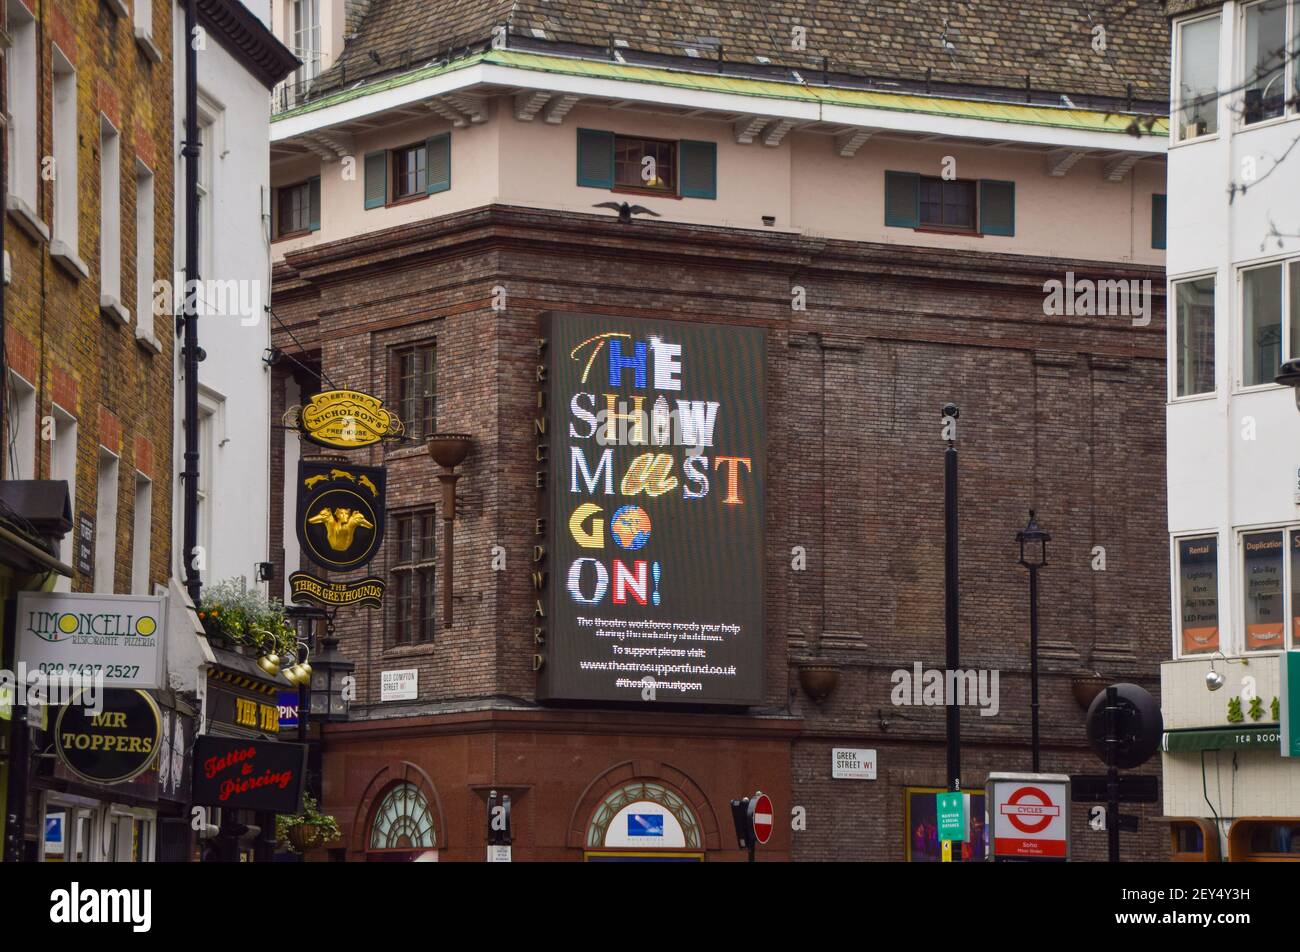 Le panneau « The Show must Go » au Prince Edward Theatre de Soho, en soutien à l'industrie du théâtre pendant le confinement du coronavirus. Londres, Royaume-Uni 5 mars 2021. Banque D'Images